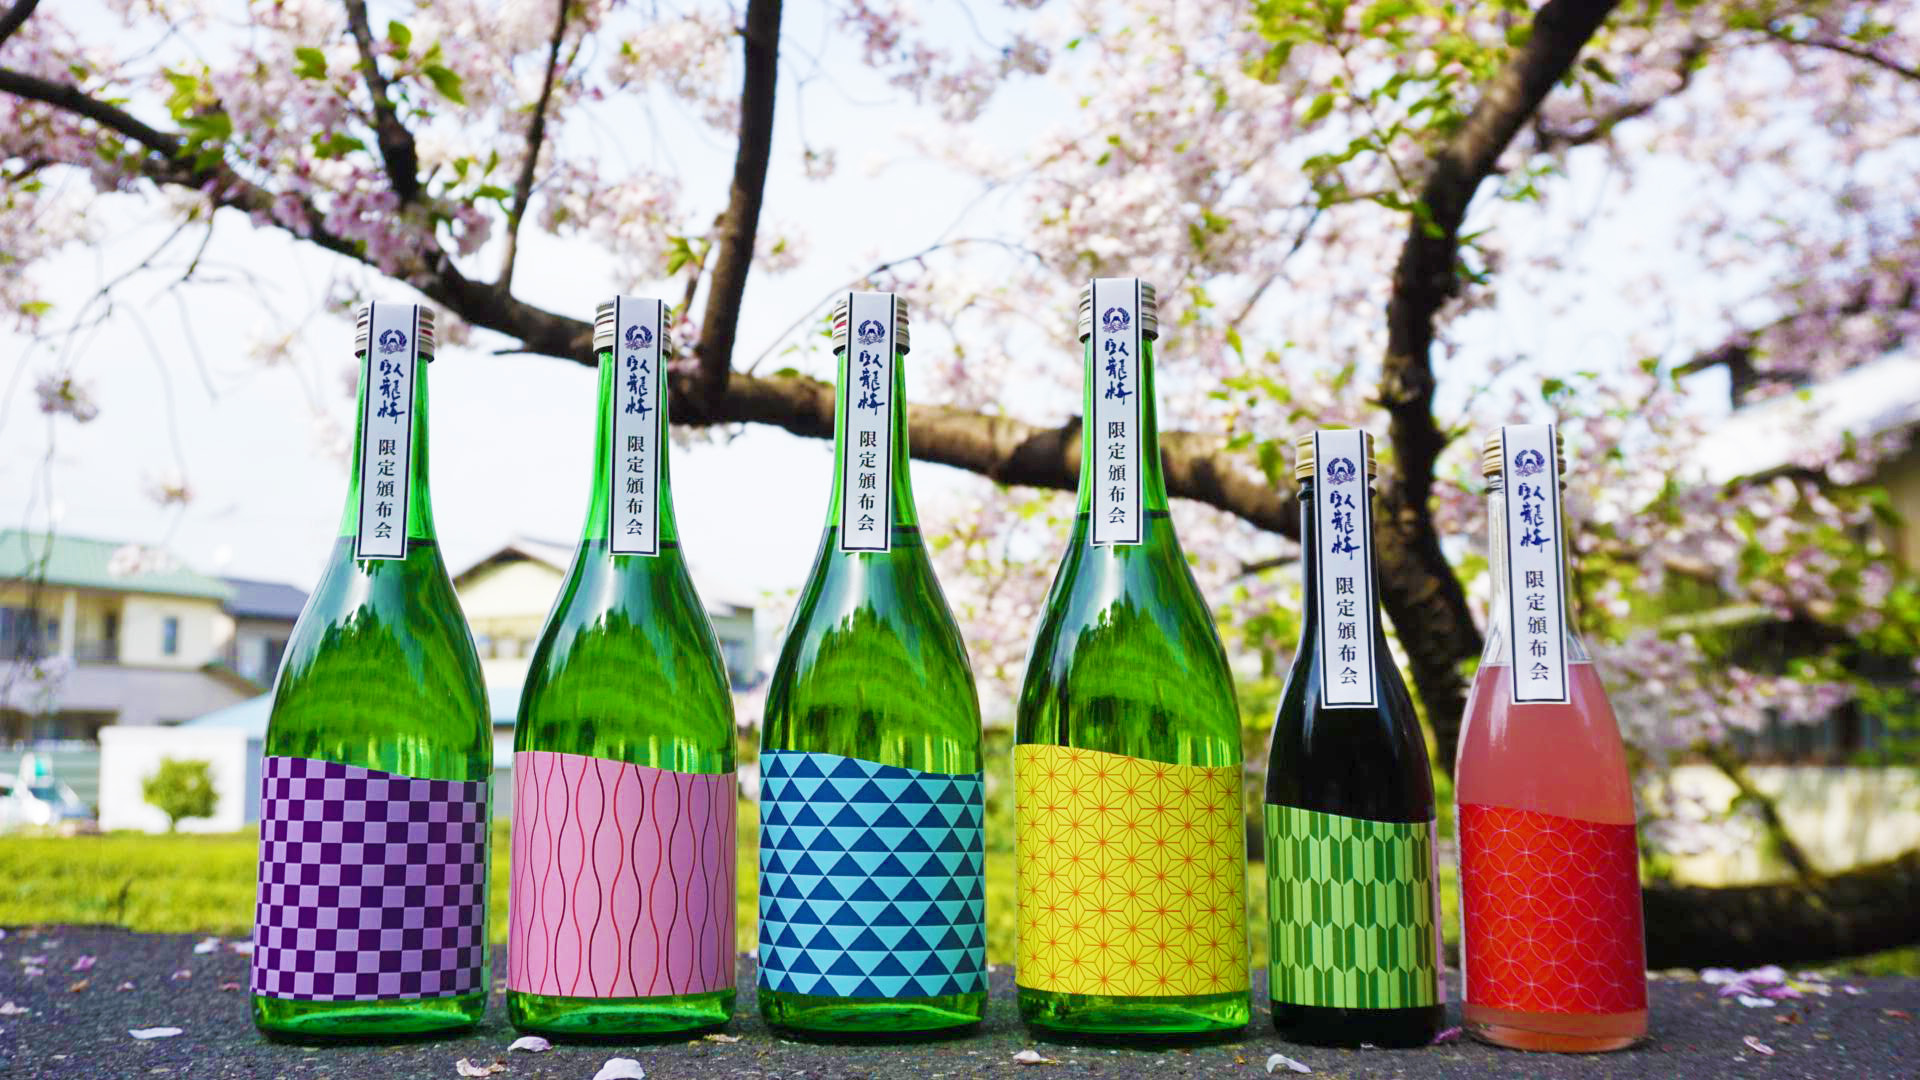 静岡・清水の地酒「臥龍梅」が3ヶ月に渡って自宅に届く企画「臥龍梅 限定頒布会 2021」受付開始